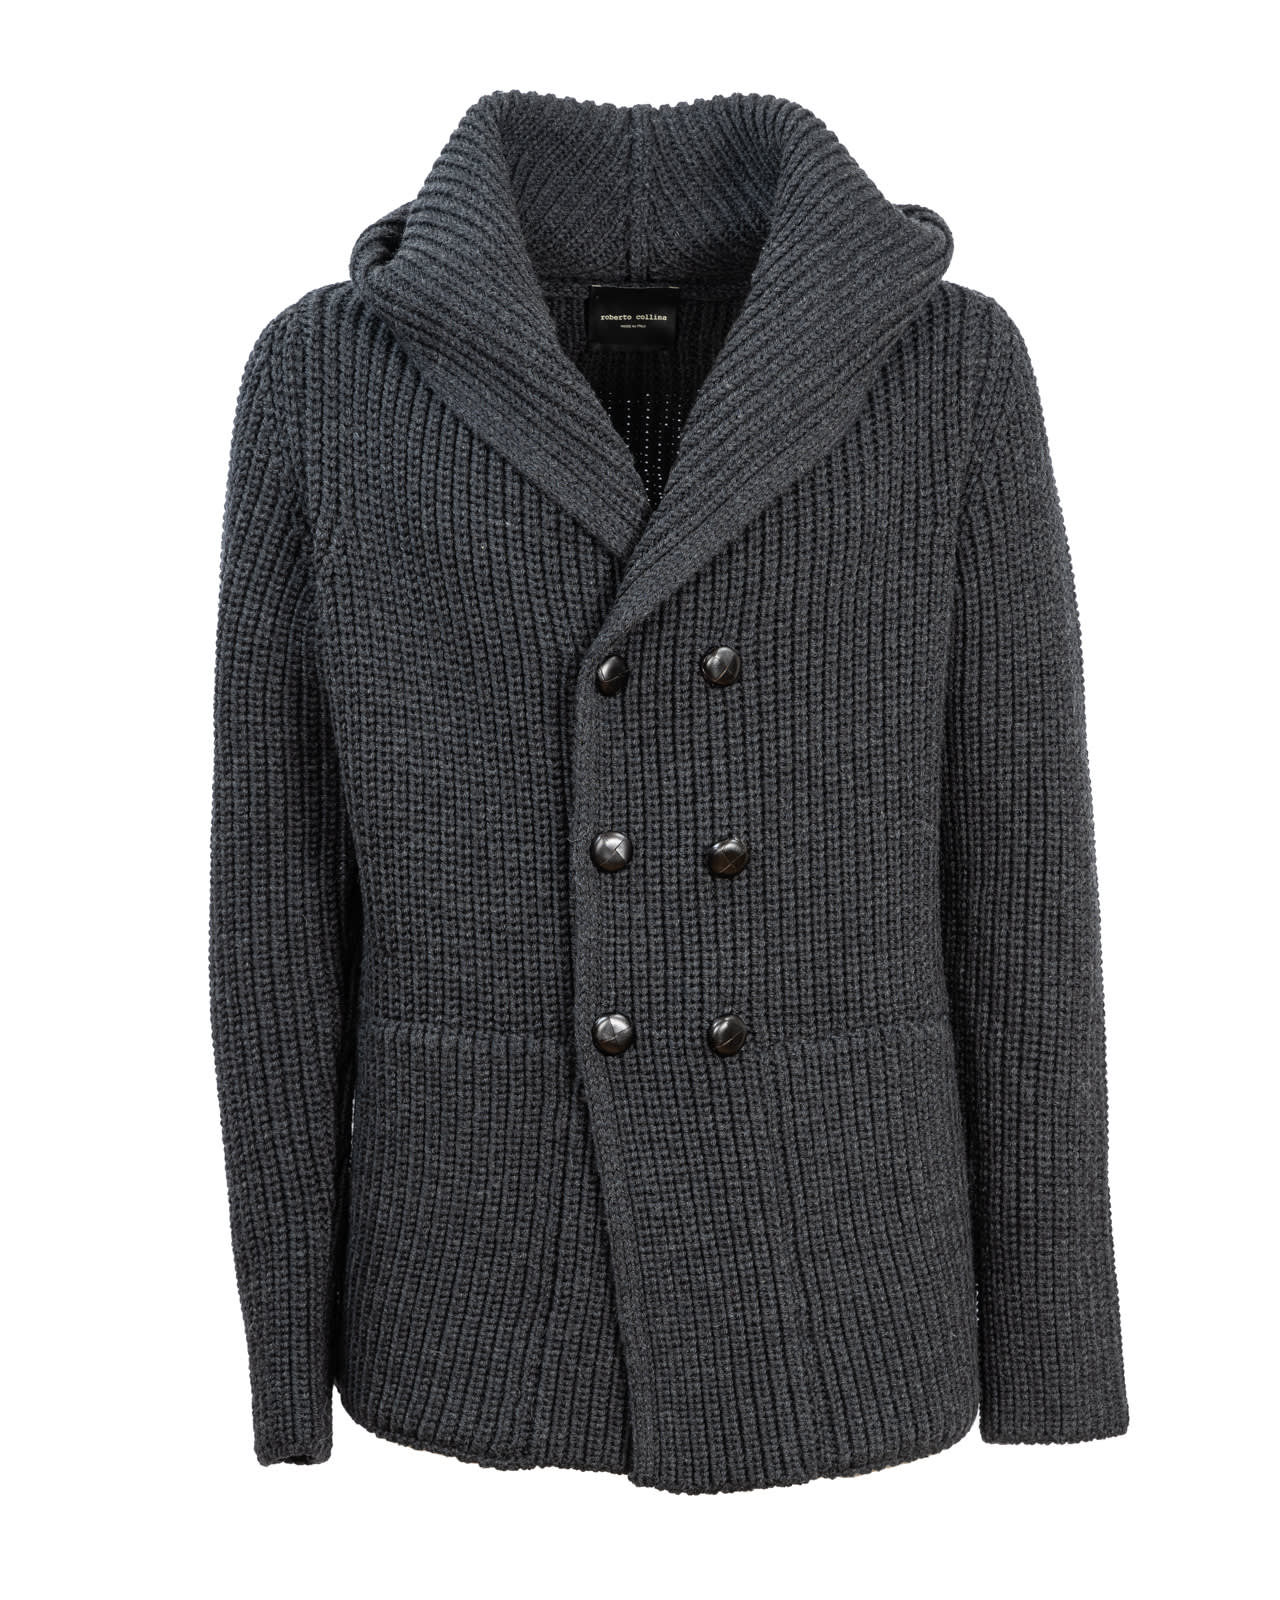 Roberto Collina wool jacket